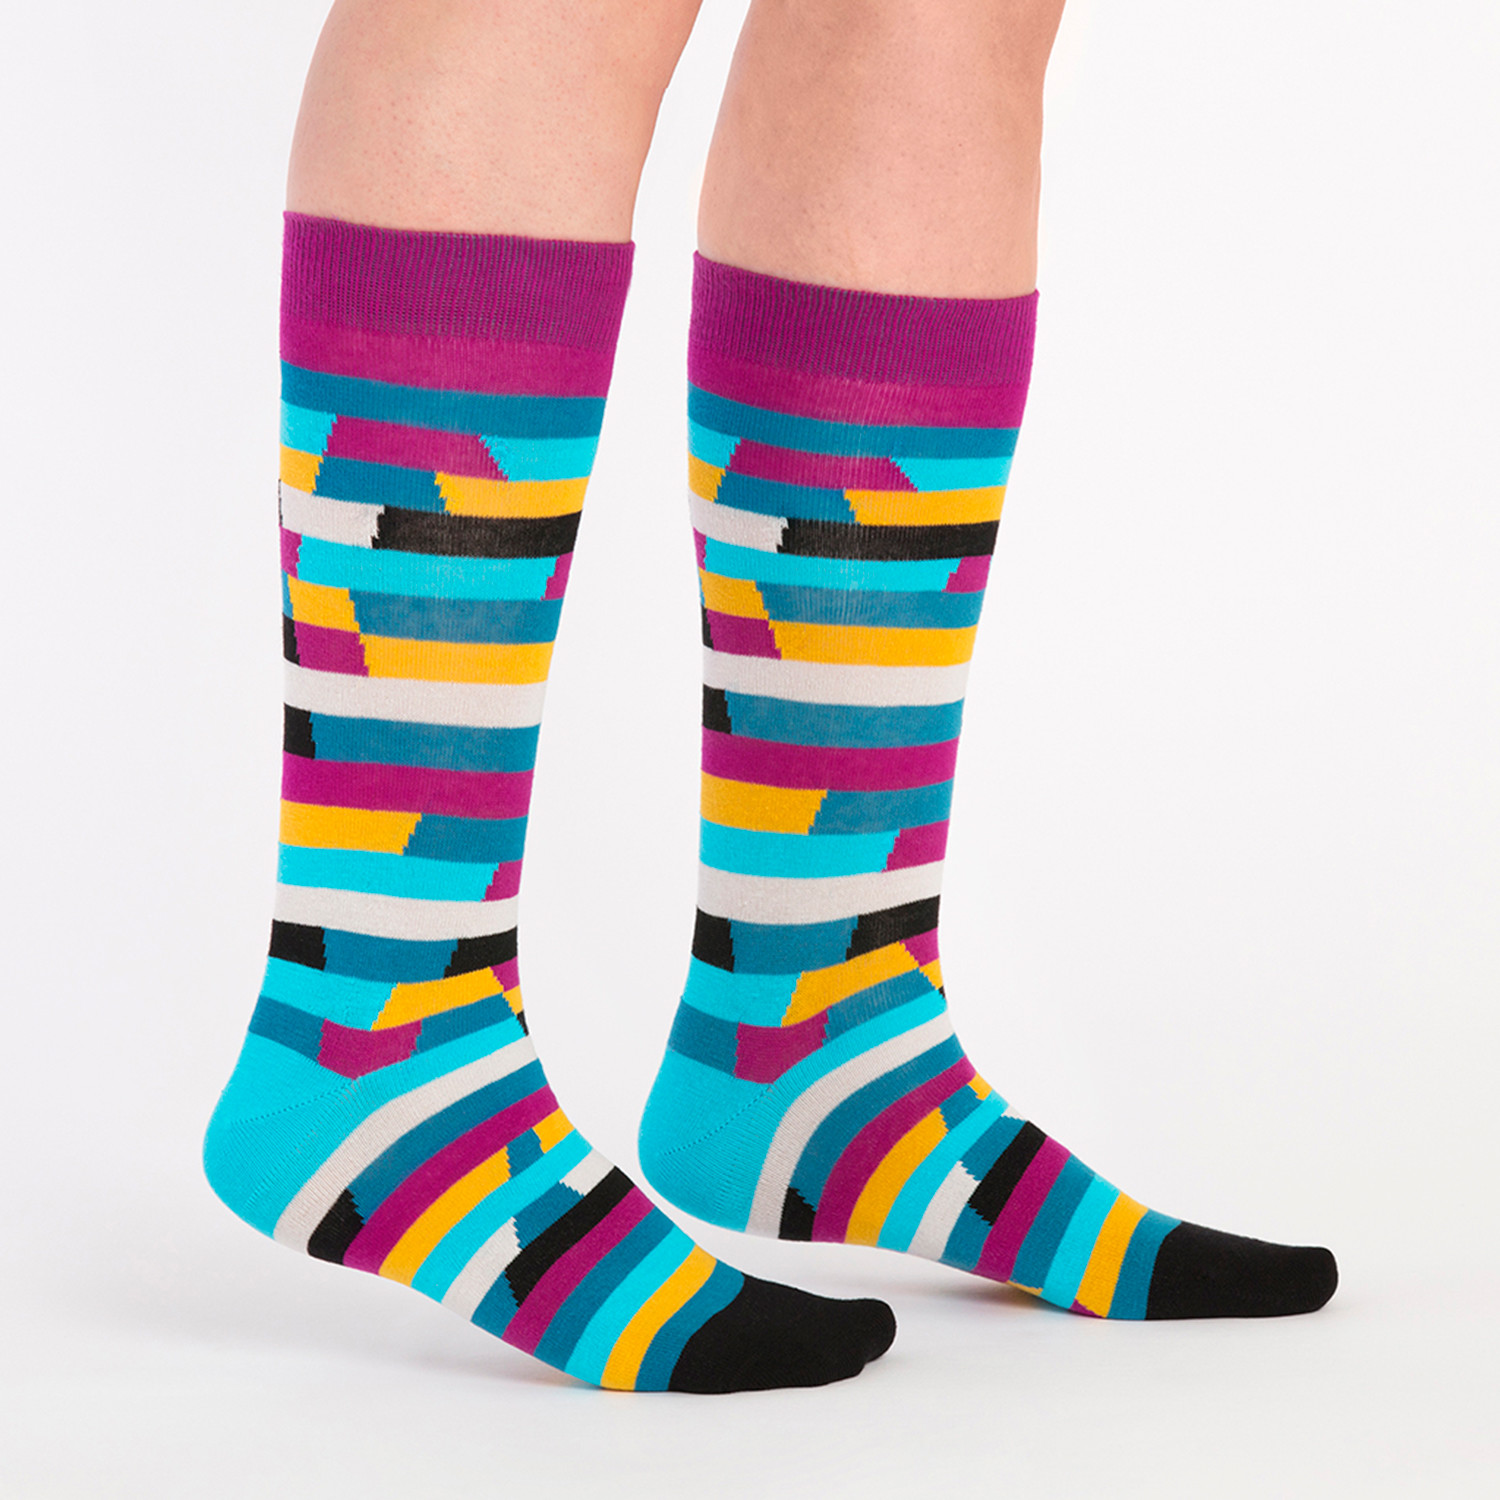 Unisex Socks // Rainbow Socks // 5 Pack - Ballonet - Touch of Modern